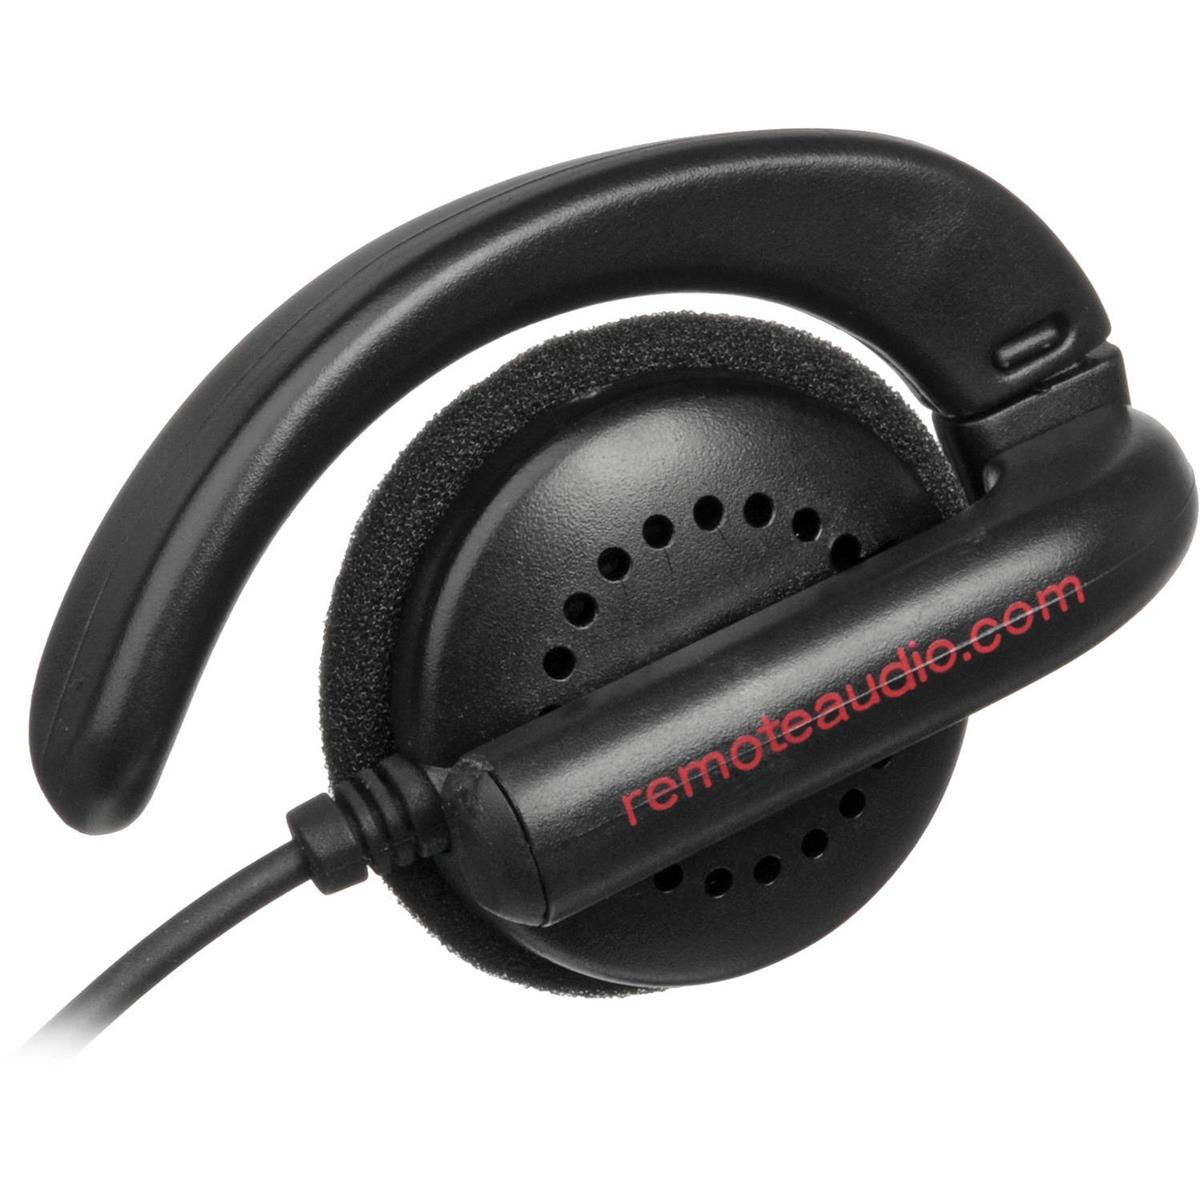 Image of Remote Audio EAR BUD Single Earphone with Swiveling Ear Hook